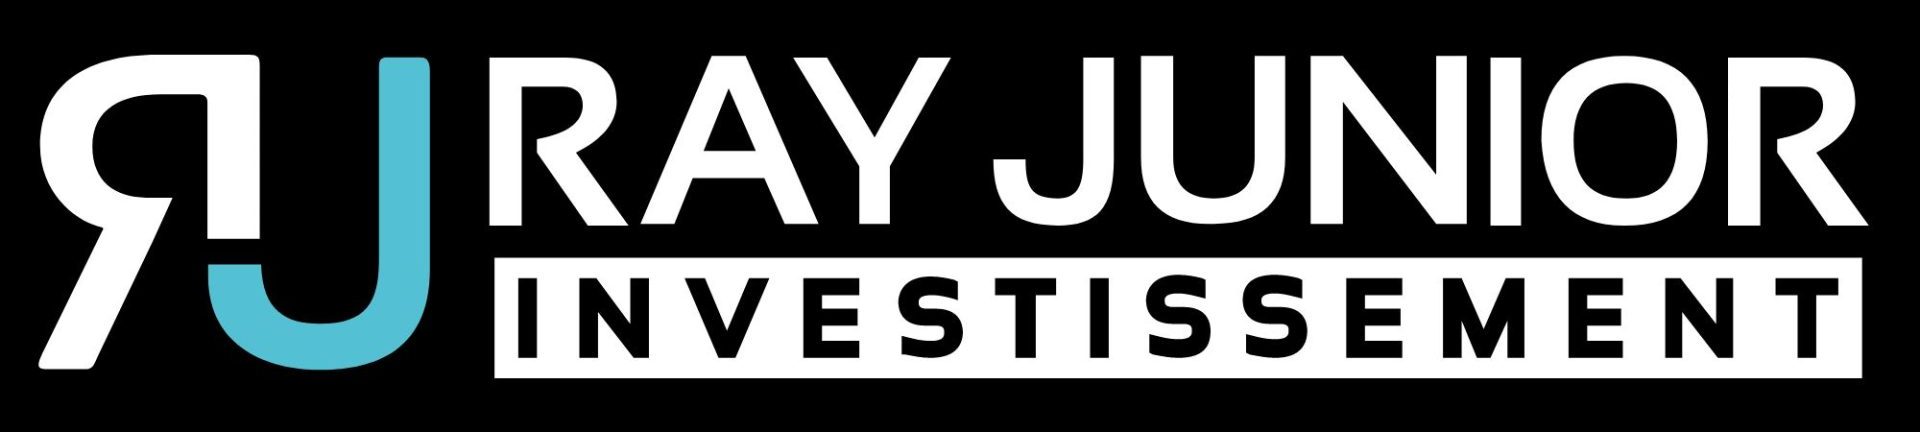 Logo investissement Ray junior, une entreprise de développement immobilier sur la rive-nord de montréal